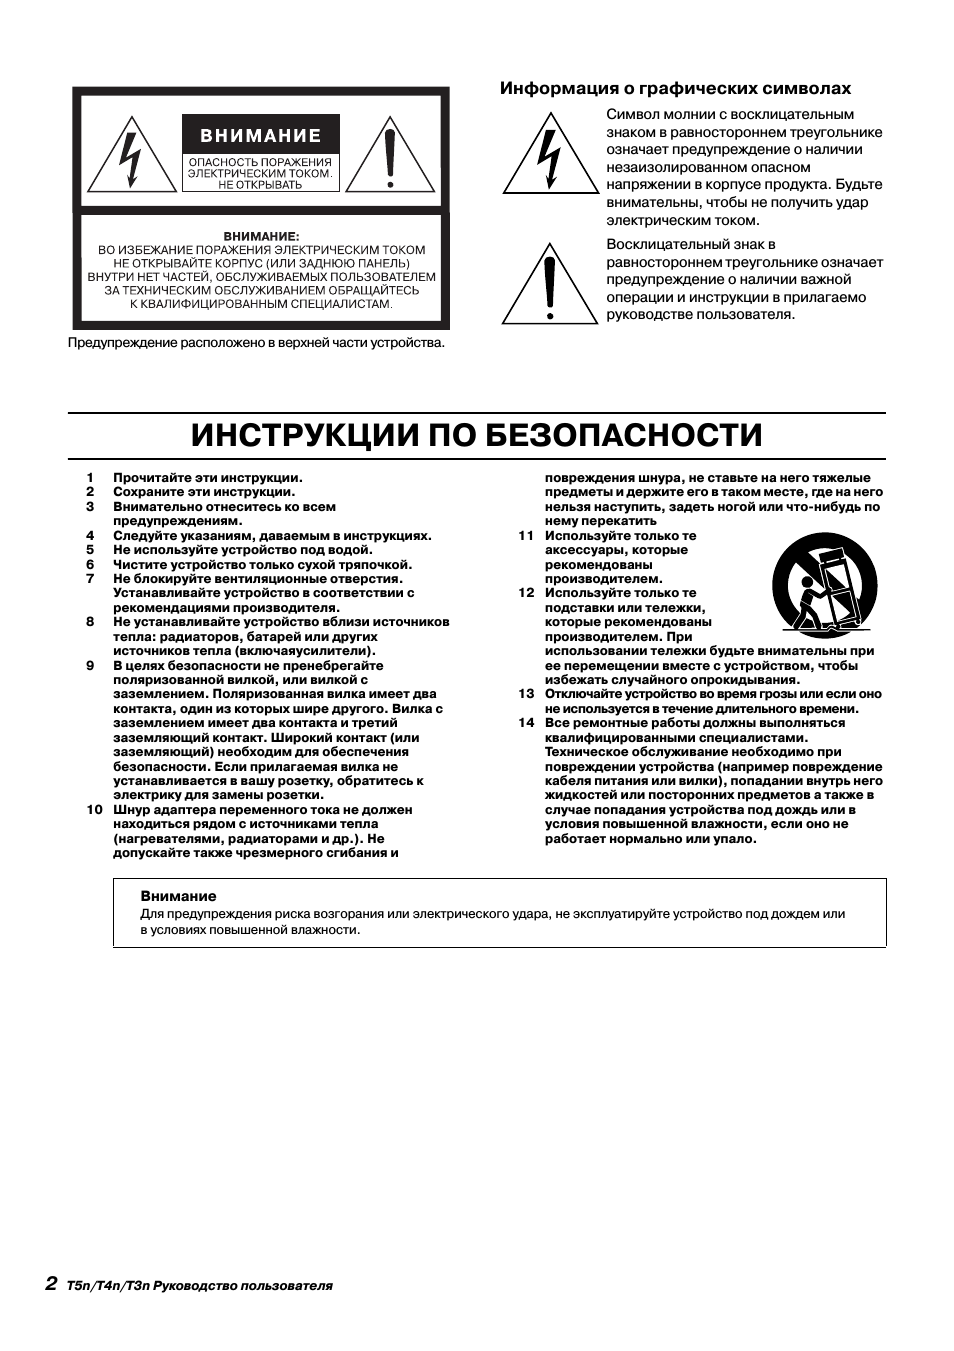 Инструкции по безопасности, Информация о графических символах | Инструкция по эксплуатации Yamaha t5n | Страница 2 / 17